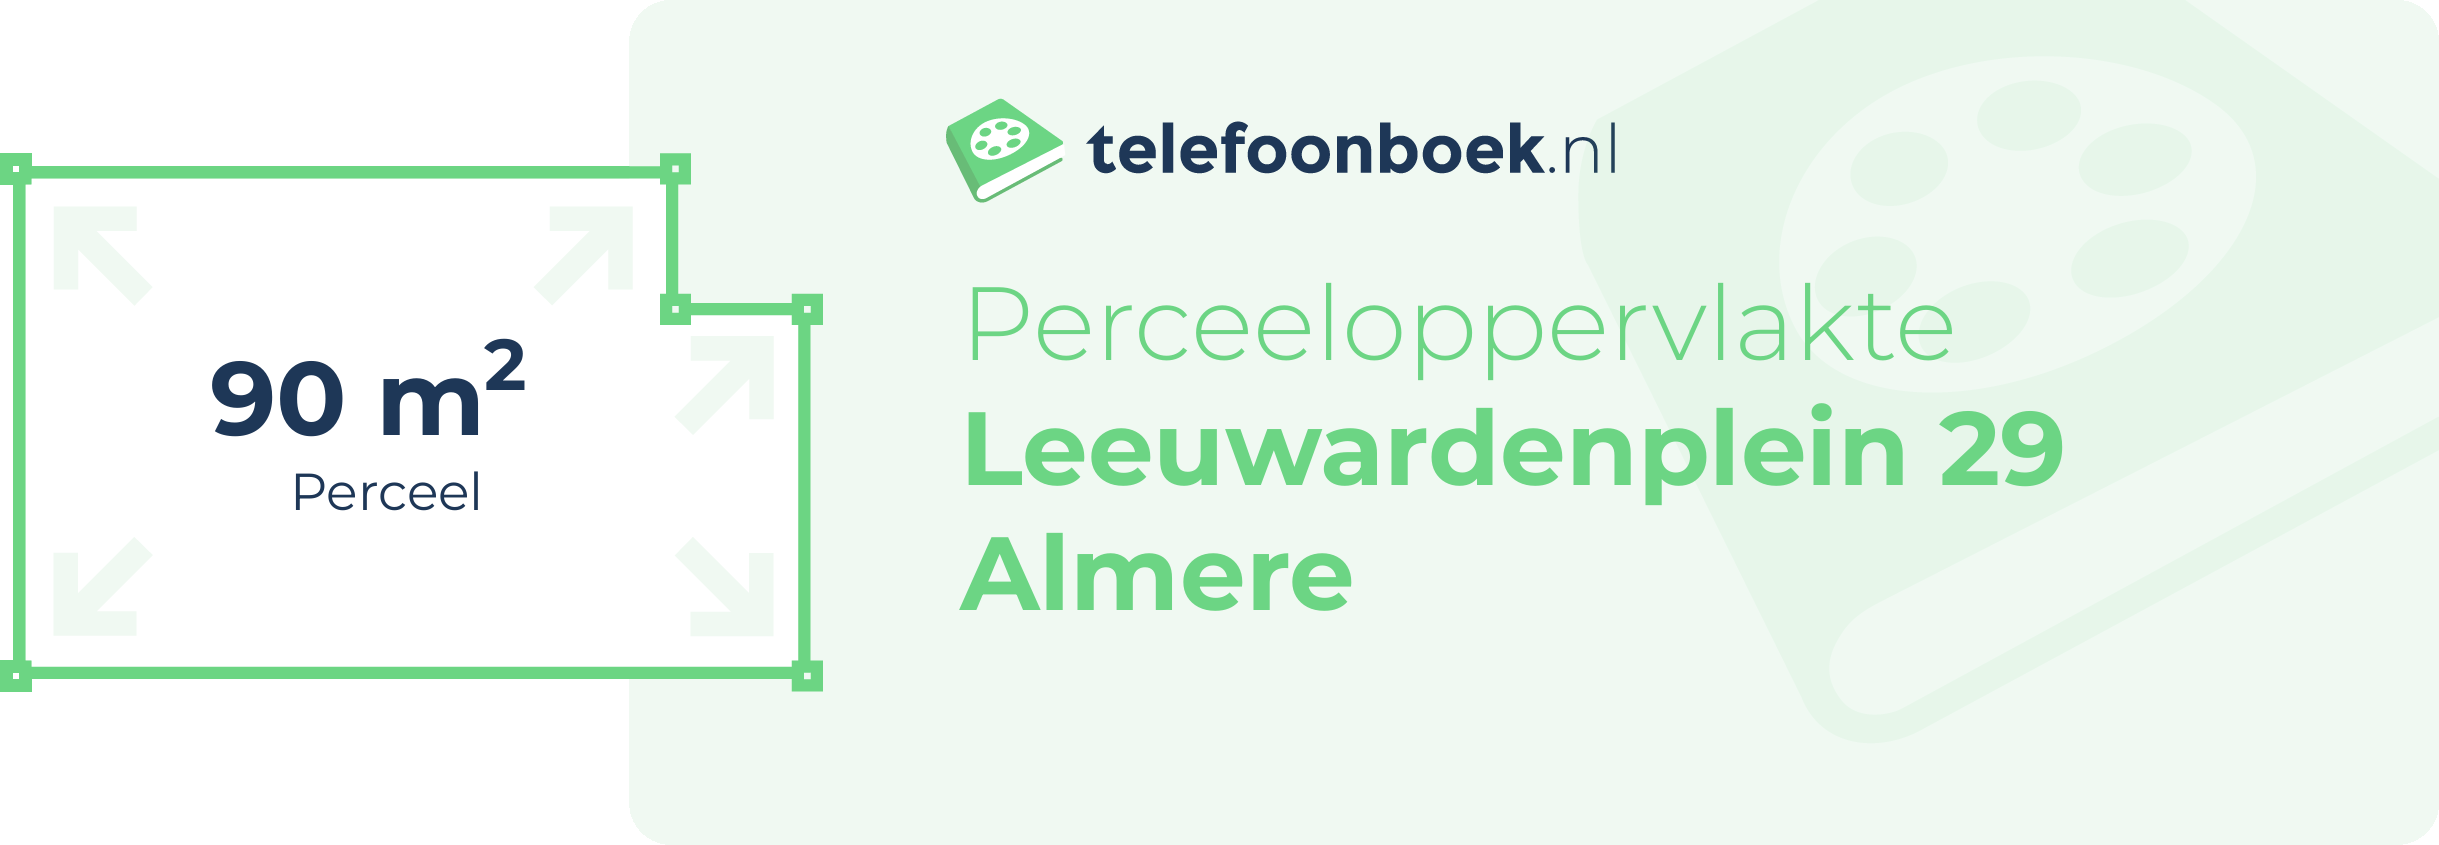 Perceeloppervlakte Leeuwardenplein 29 Almere